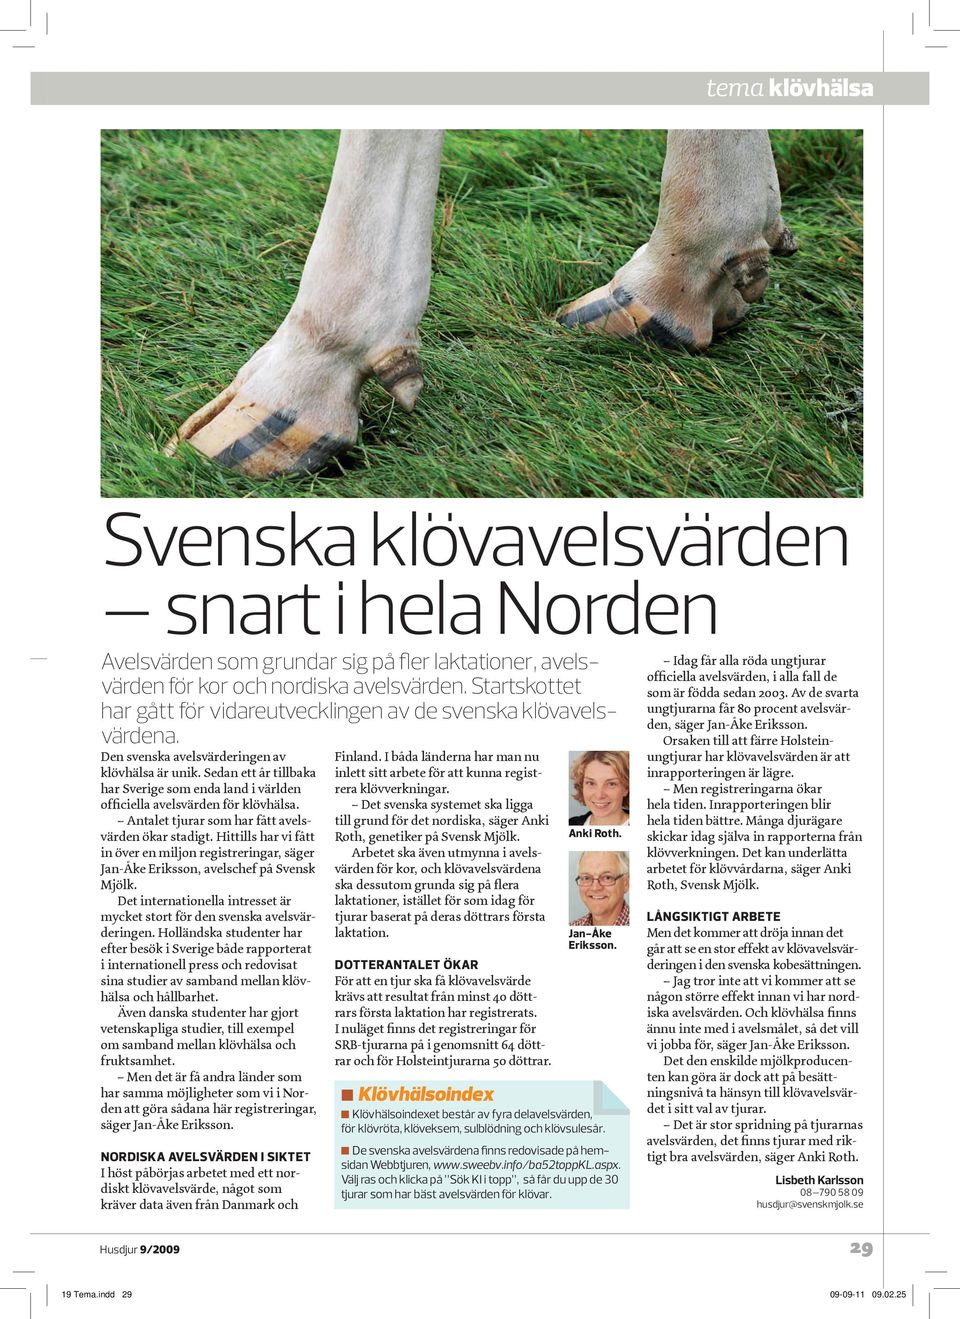 Sedan ett år tillbaka har Sverige som enda land i världen officiella avelsvärden för klövhälsa. Antalet tjurar som har fått avelsvärden ökar stadigt.